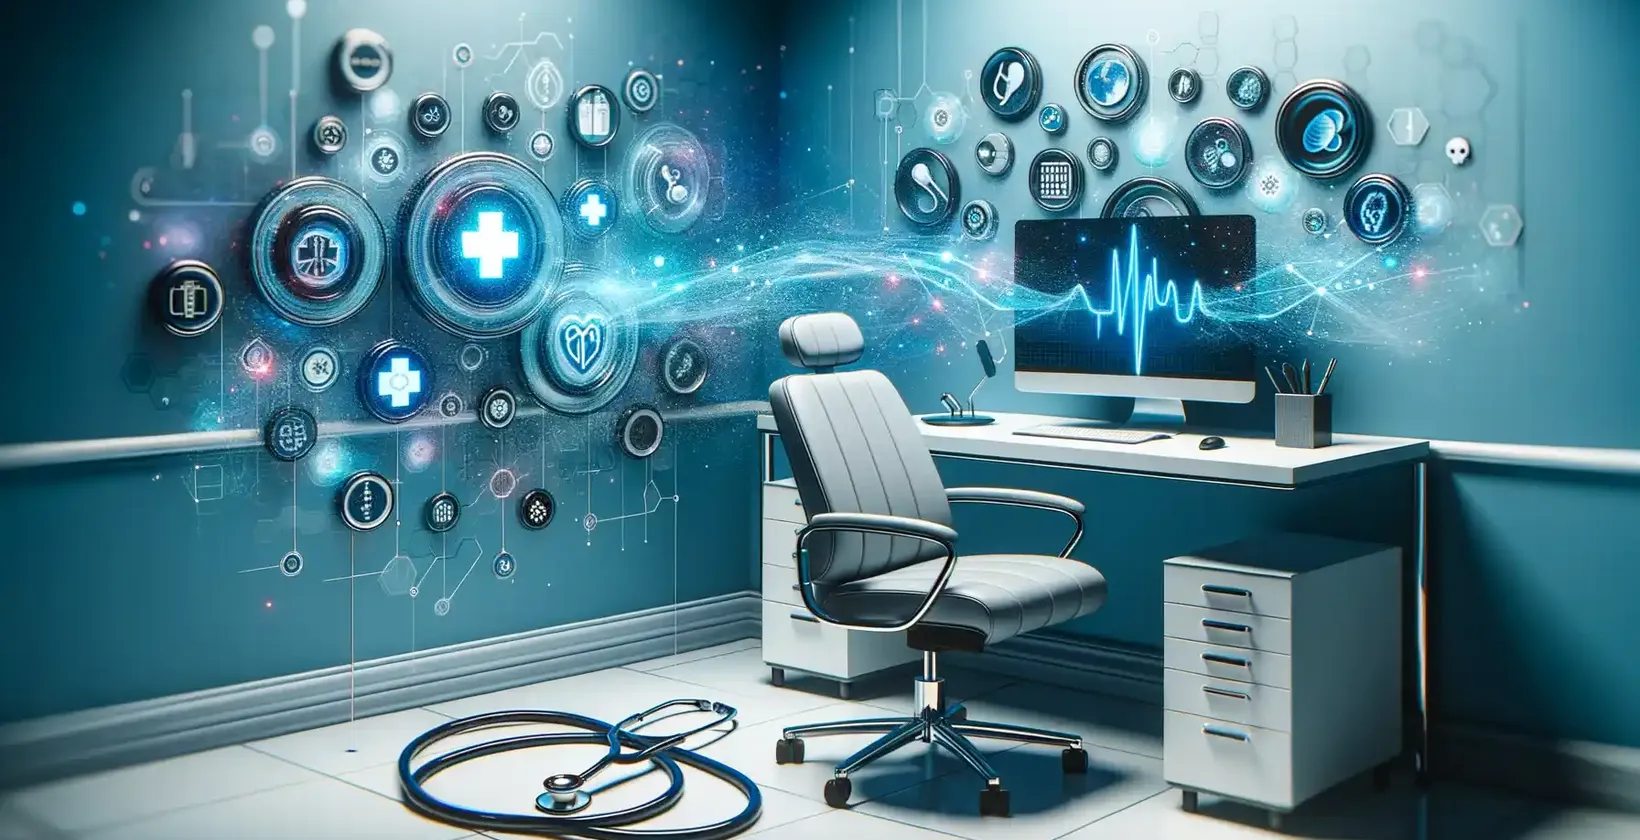 تطبيقات النسخ الطبي في مكتب حديث مع رموز صحية رقمية وأبرز الصور الثلاثية الأبعاد